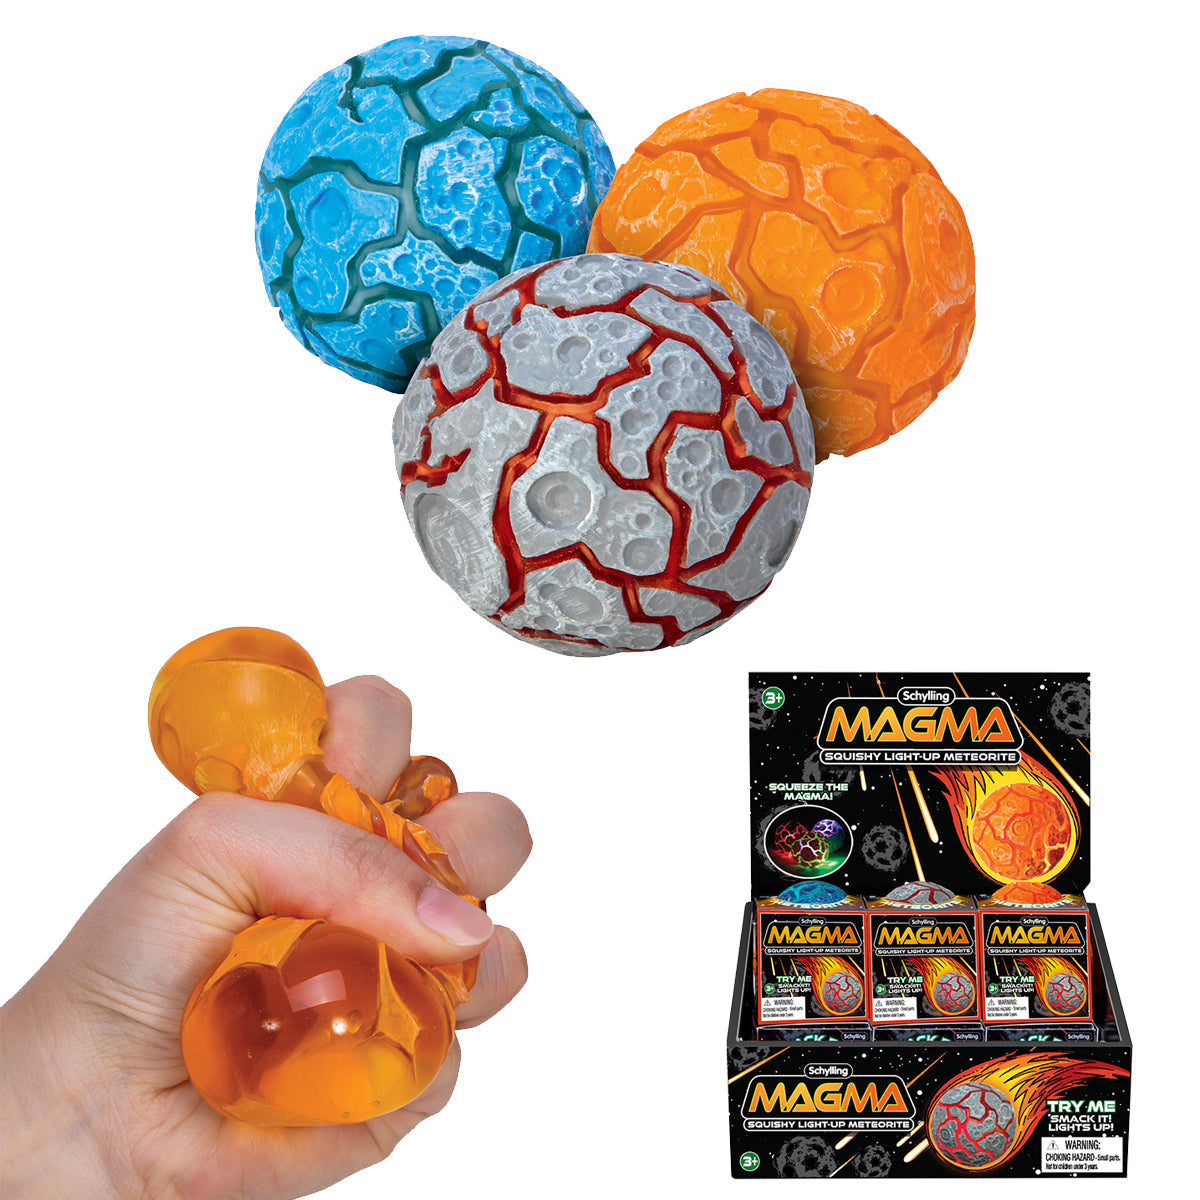 MGM-Magma-Ball-Lightup-Lighted-Group2-web-800x800.jpg